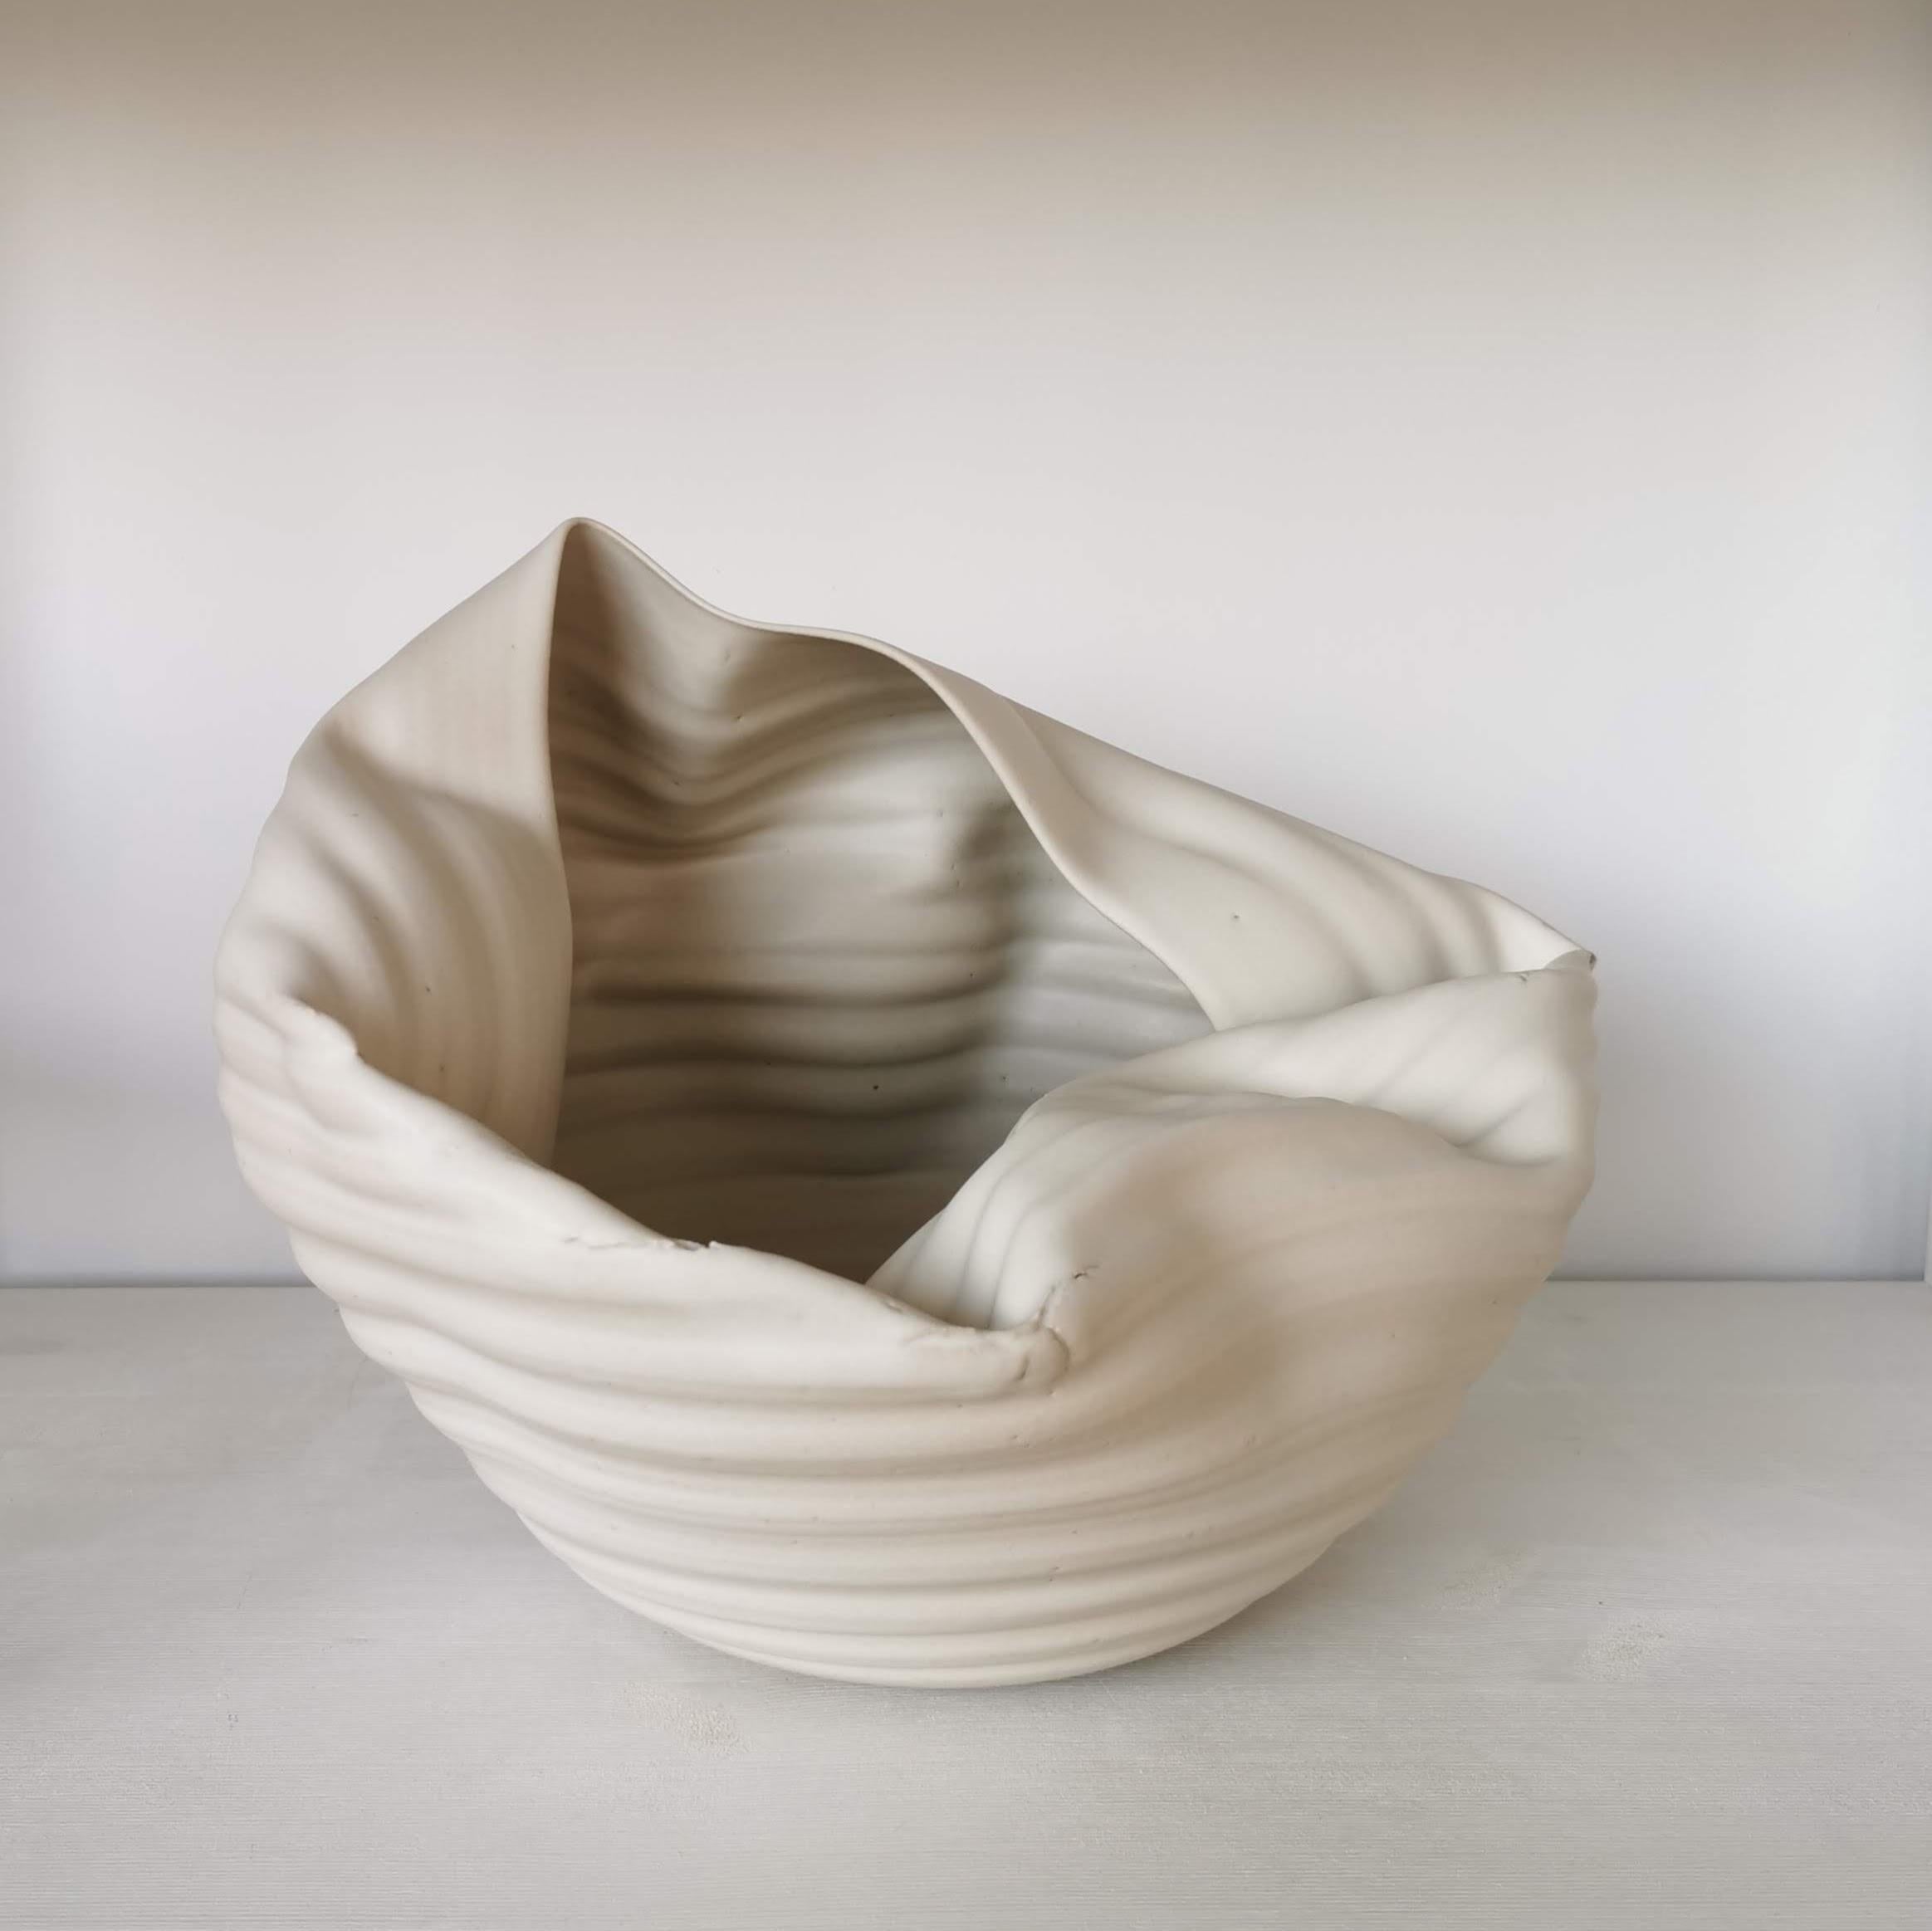 Spanish Ribbed White Open Form, Vase, Interior Sculpture or Vessel, Objet D'Art For Sale